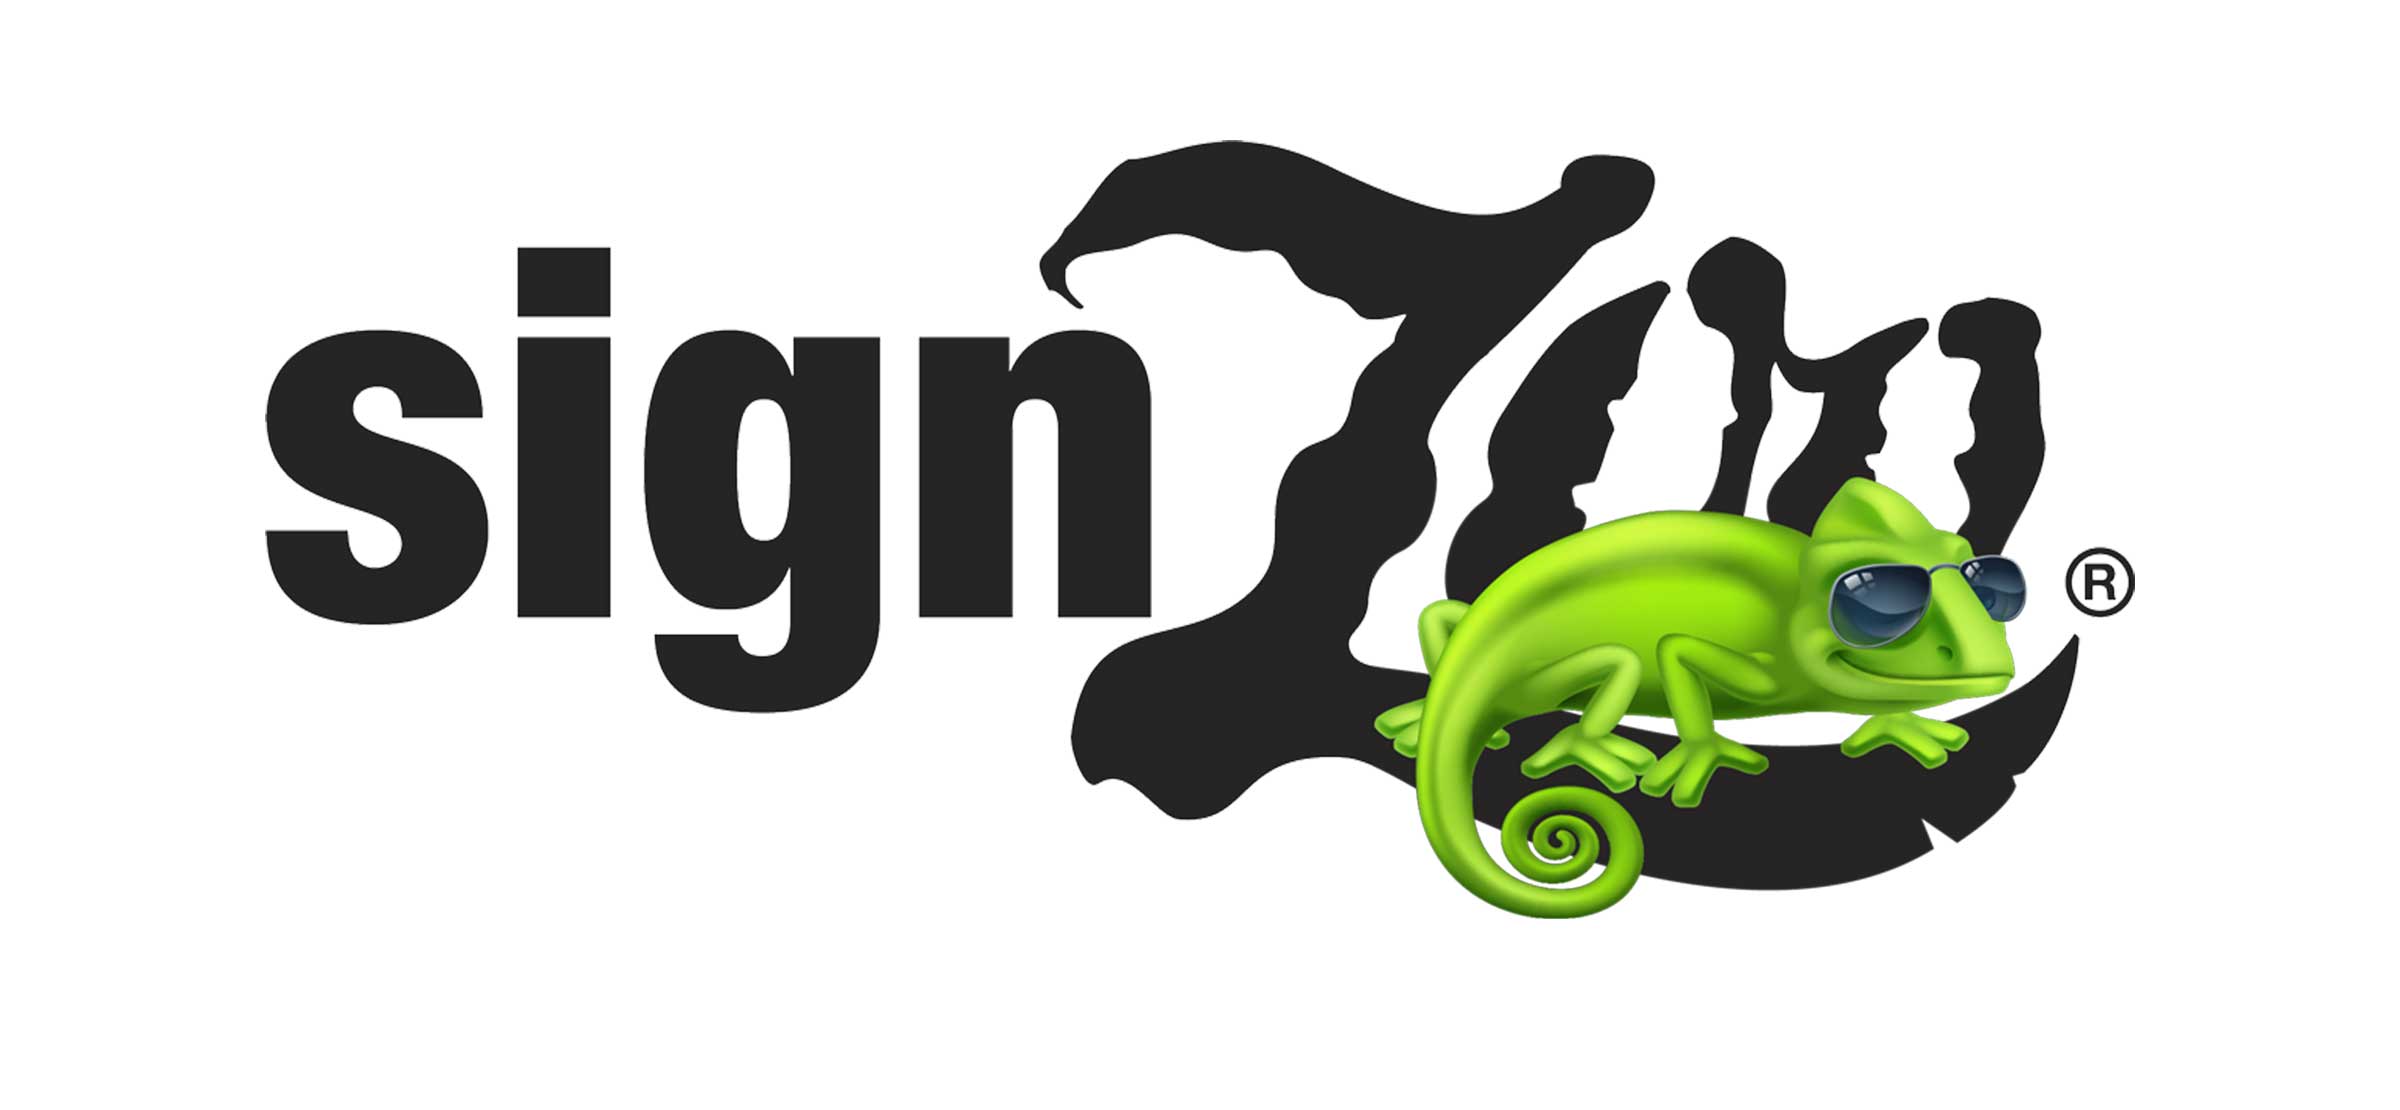 Tips for Logo Design: Part 1